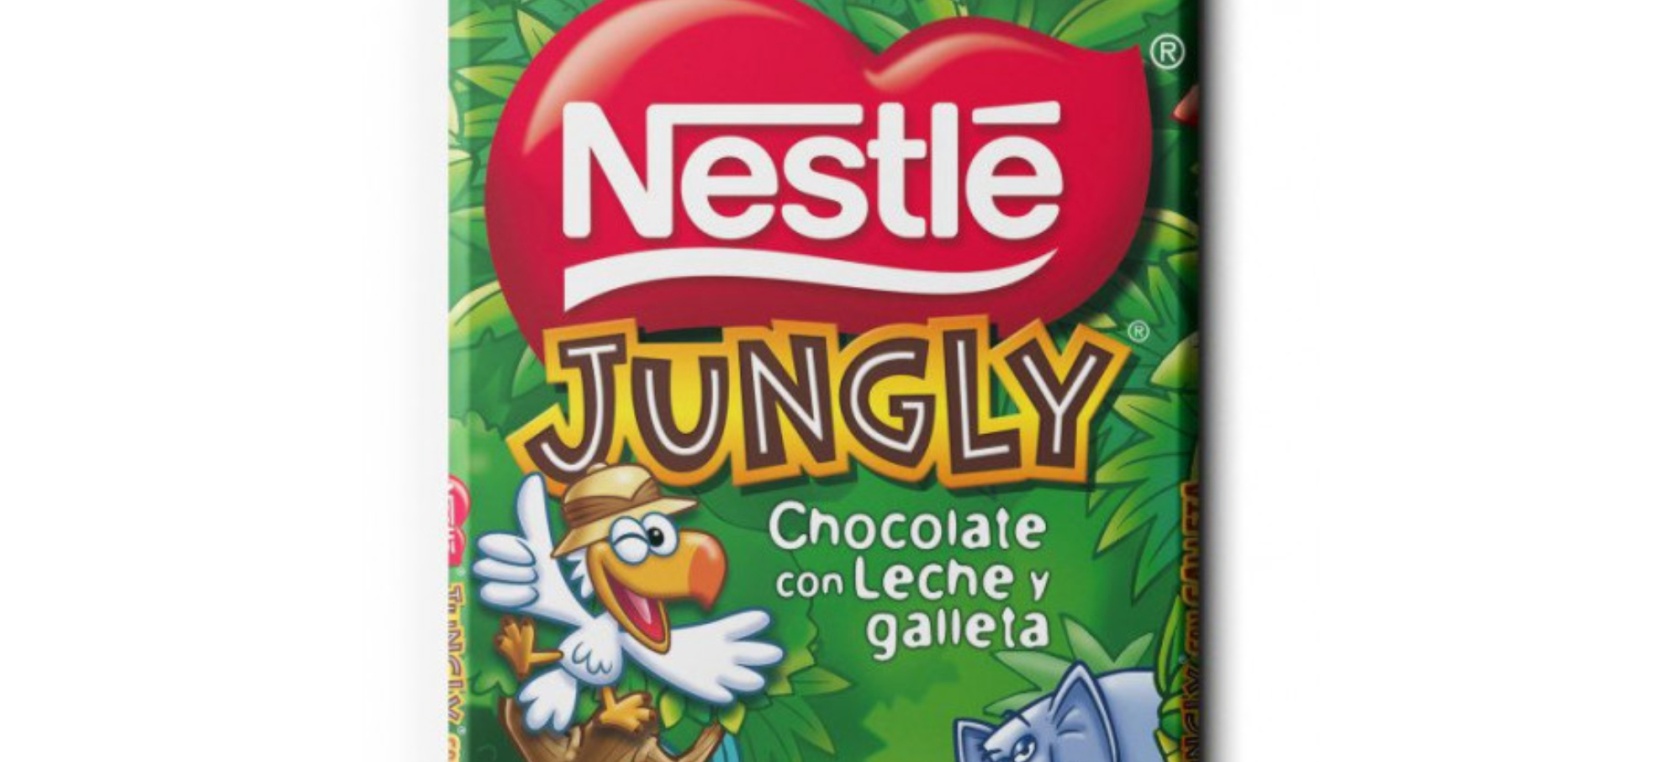 La nueva versión de Nestlé Jungly arrasa en los supermercados: “Ha llegado mi perdición”